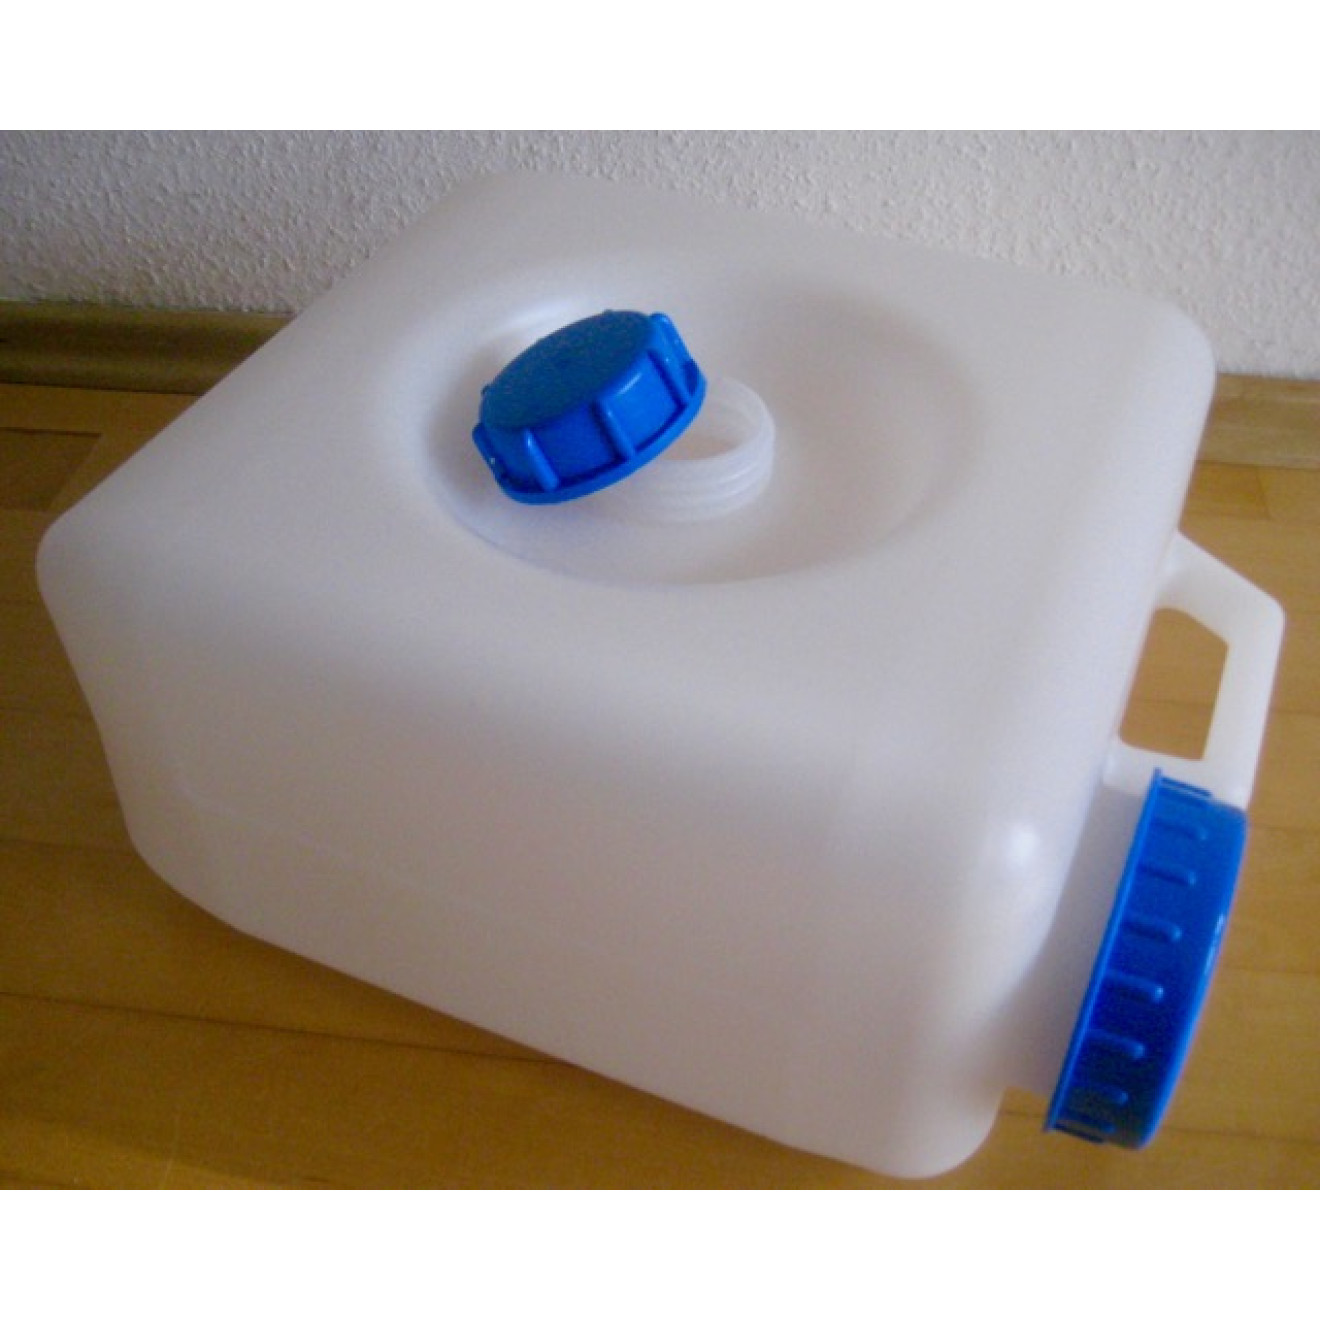 Osmosewasser online kaufen - 10L Kanister